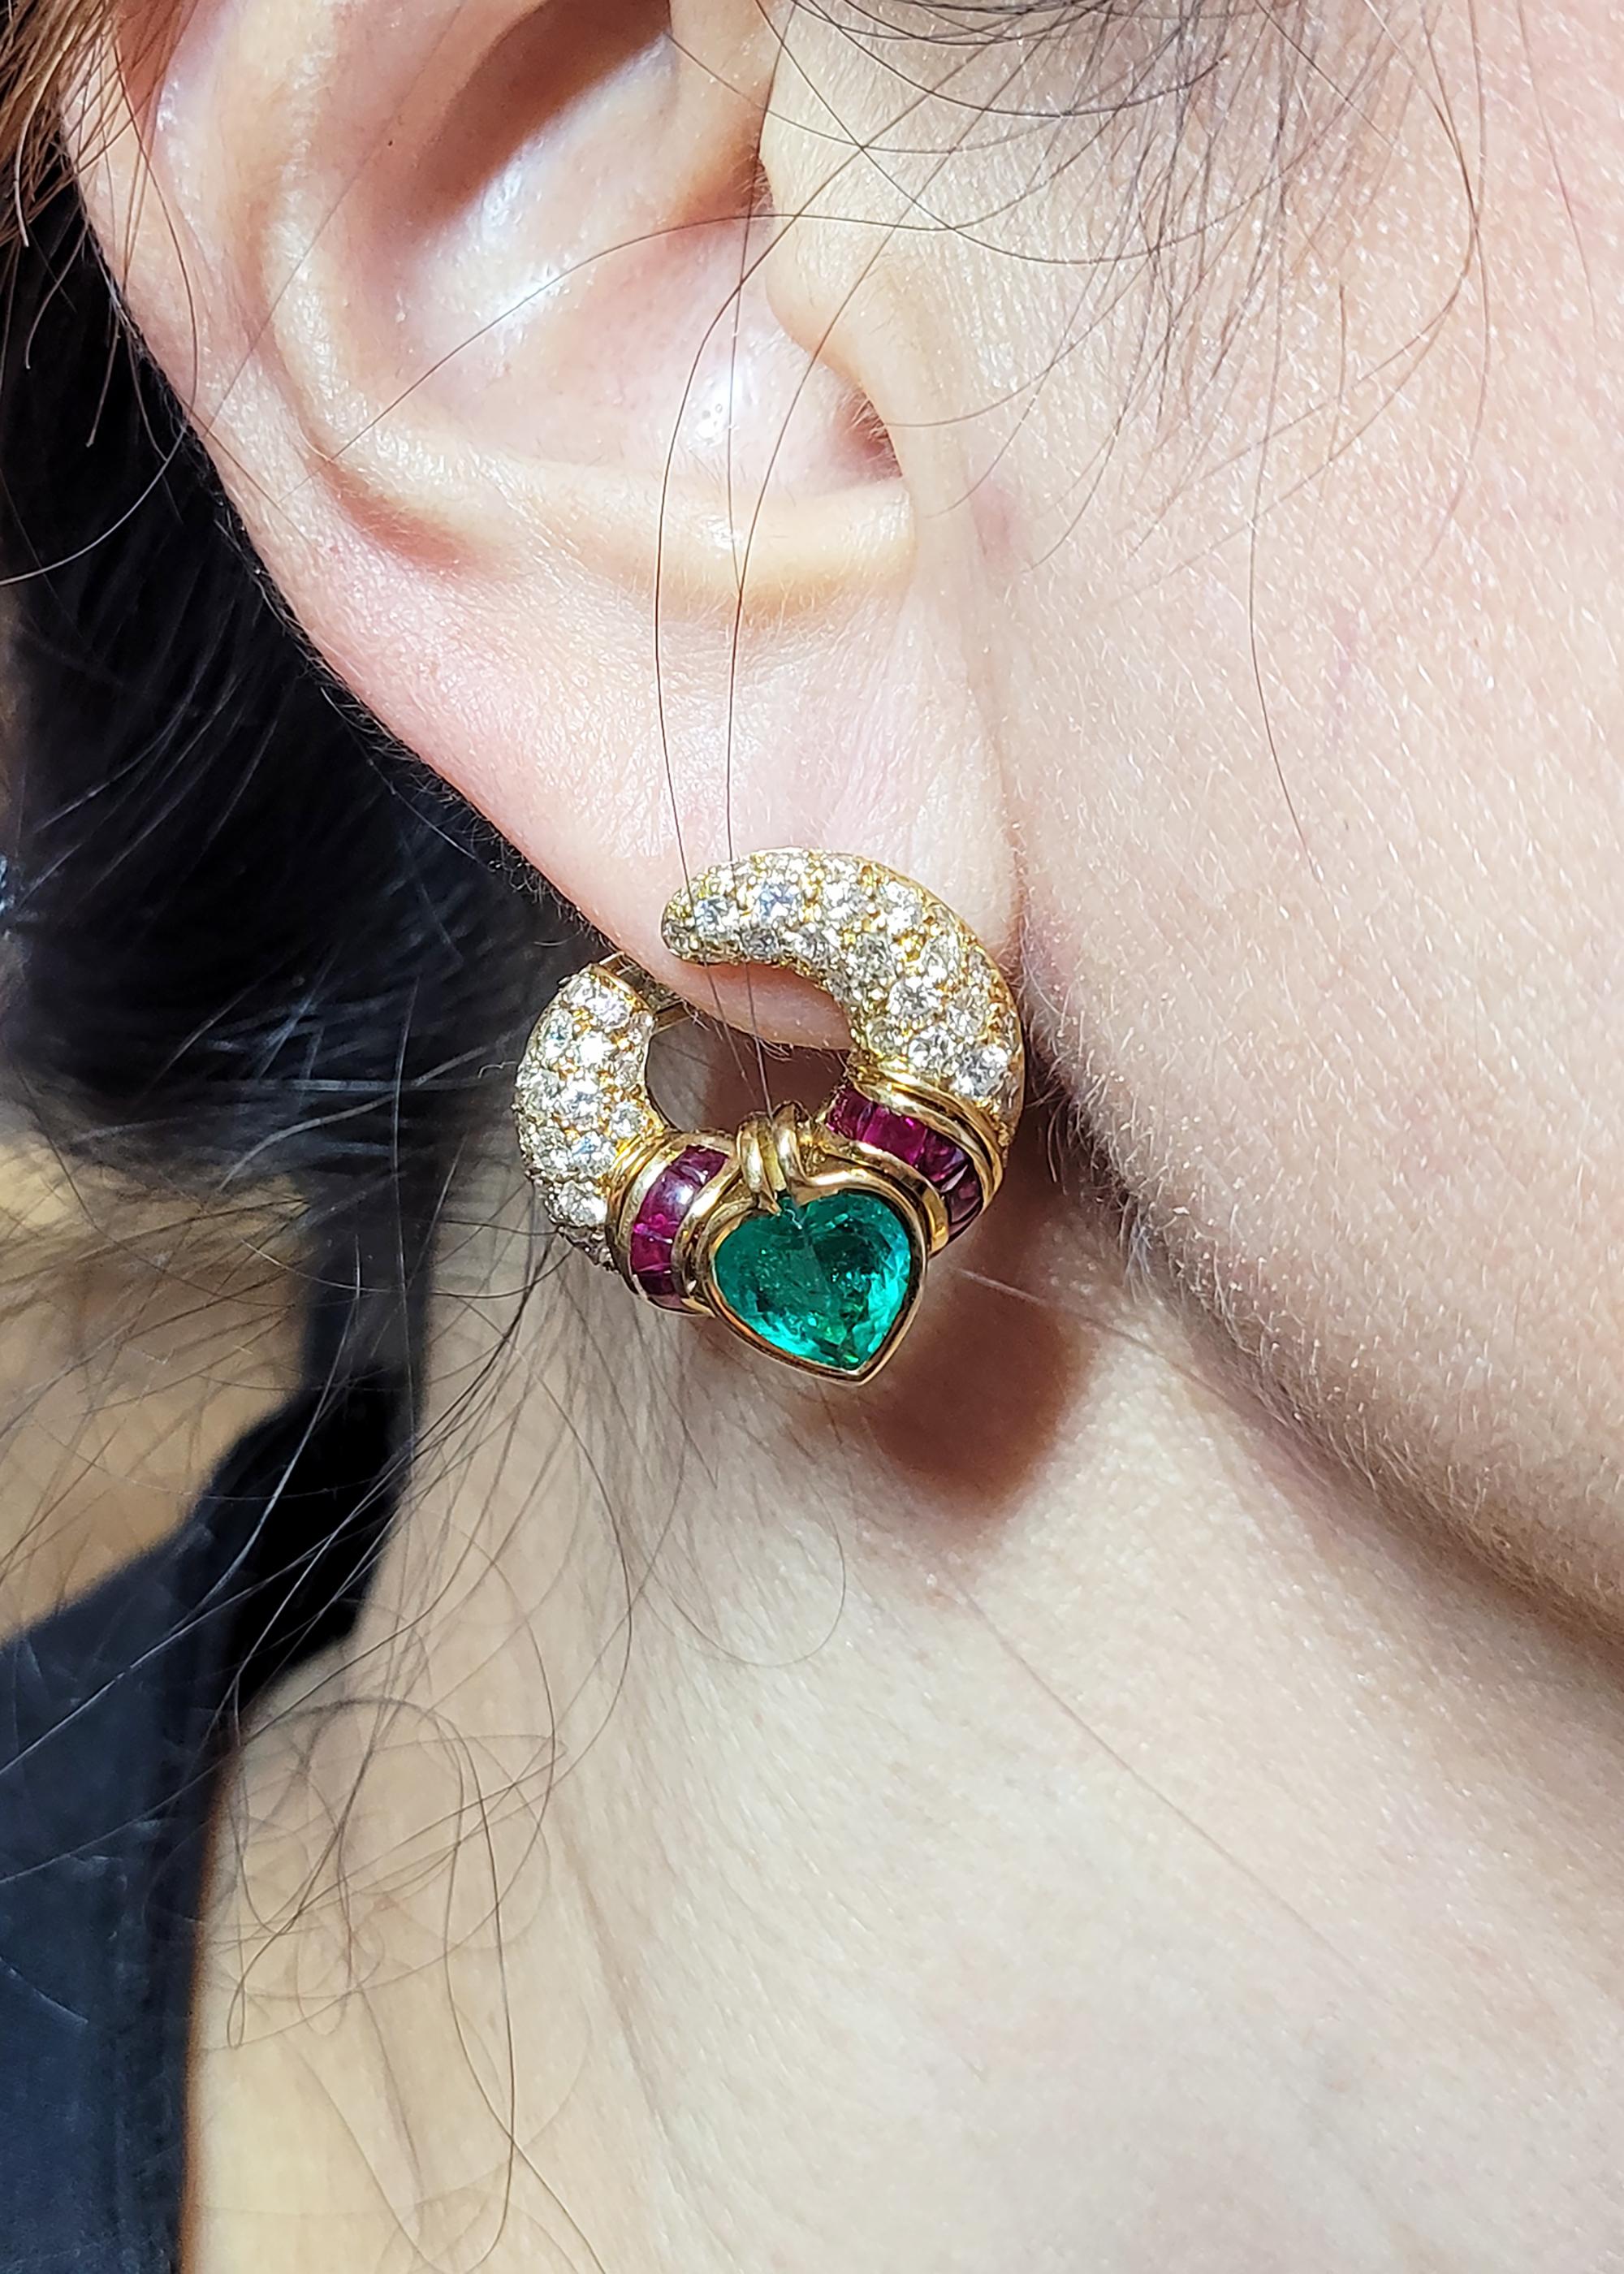 Ein Paar Vintage-Ohrringe von Bvlgari aus den 1980er Jahren.
Bestehend aus zwei kolumbianischen Smaragden in Herzform mit einem Gewicht von 1,81 Karat und 2,04 Karat. 
Akzentuiert durch unsichtbar gefasste Rubine und weiße Diamanten. 
Metall ist 18k